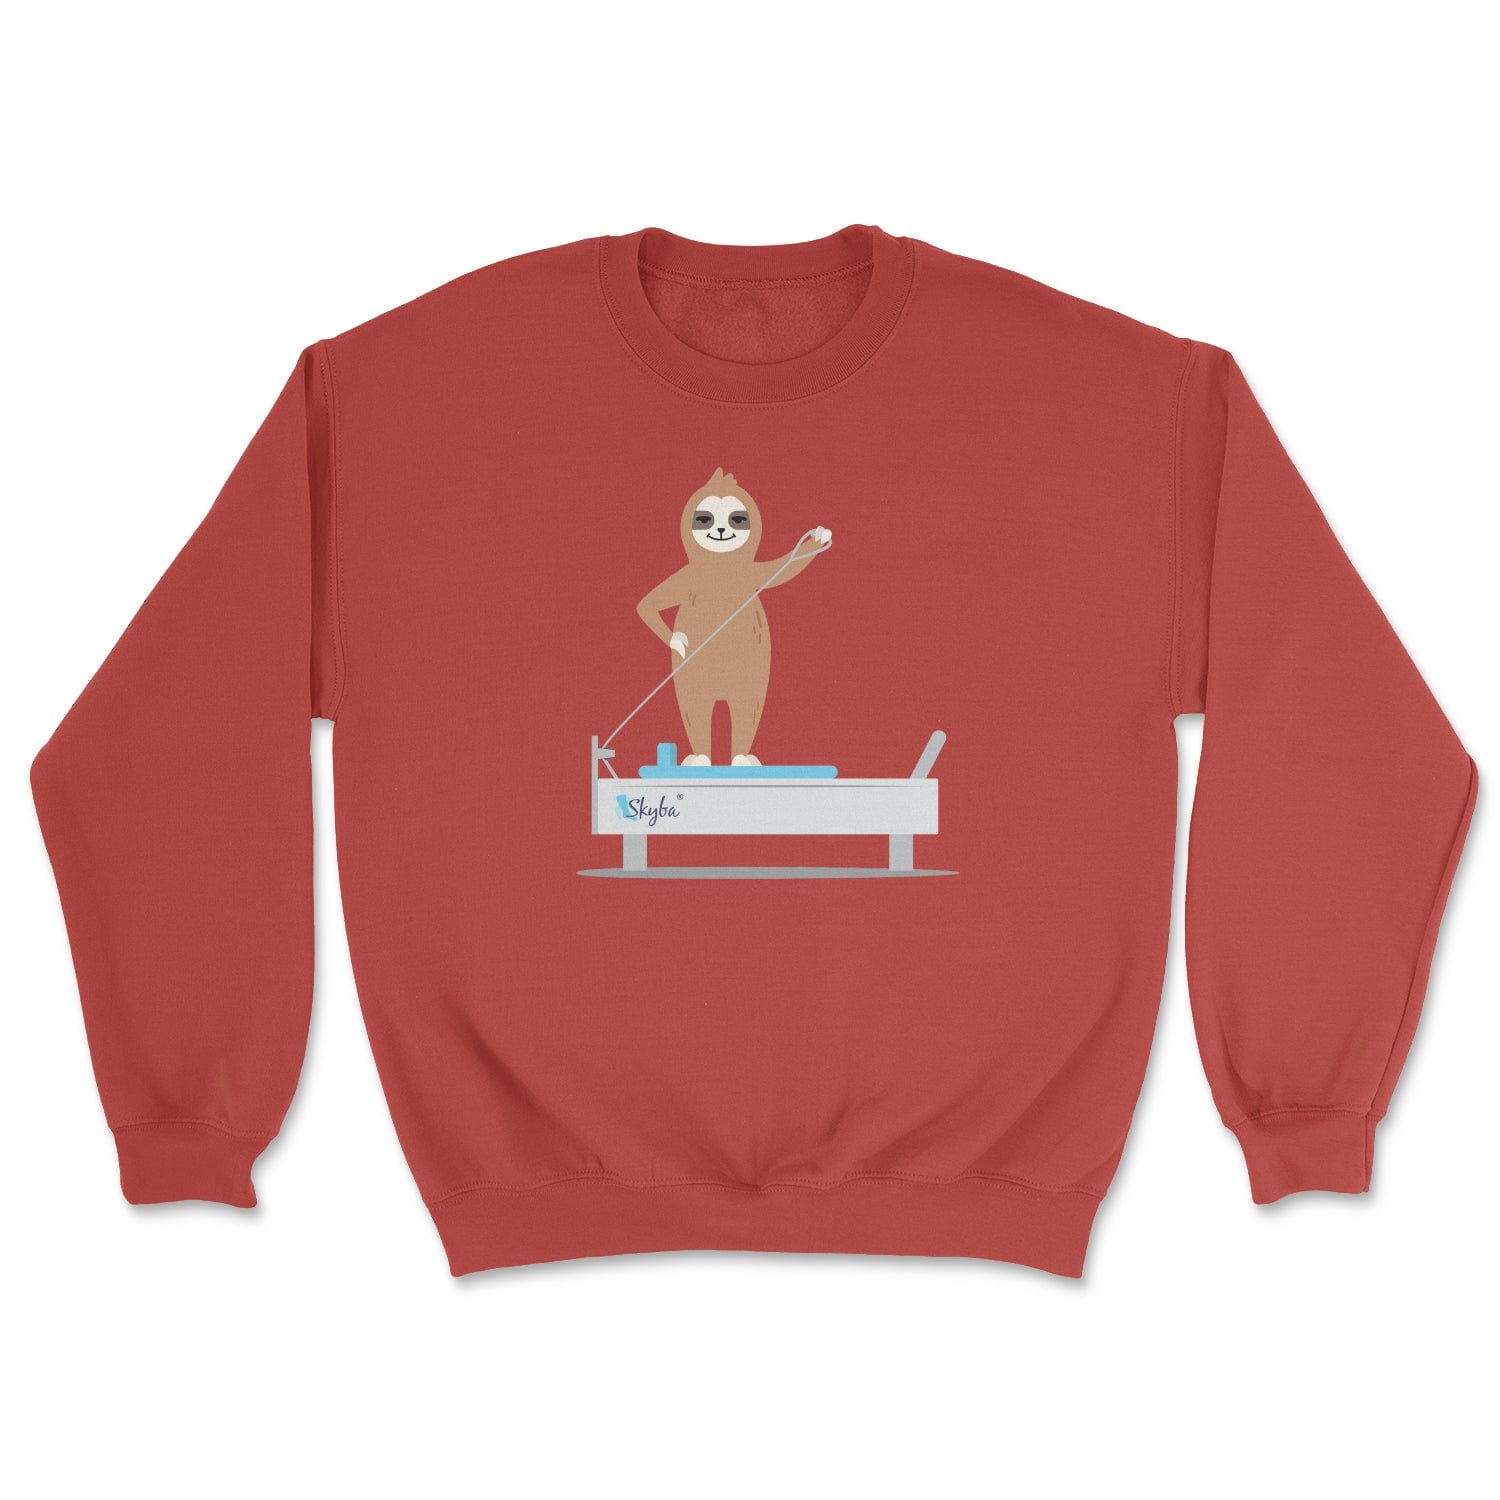 Sloth on the Reformer - Cozy Crewneck Sweatshirt Skyba Sweatshirt